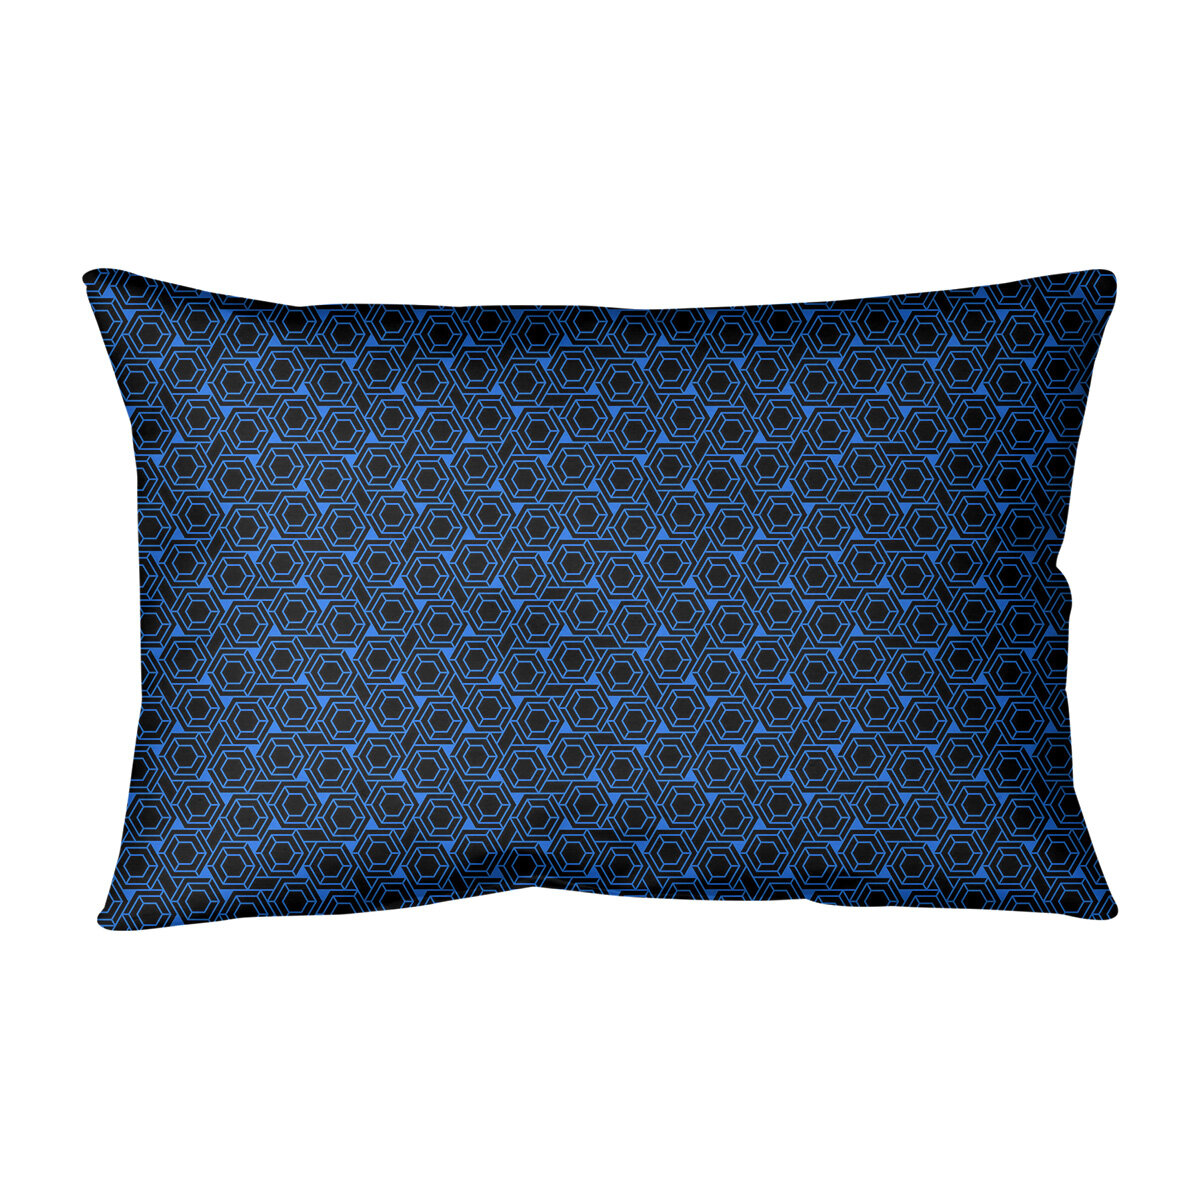 Ebern Designs Leffel Hexagonal Lattice Indoor/Outdoor Lumbar Pillow ...